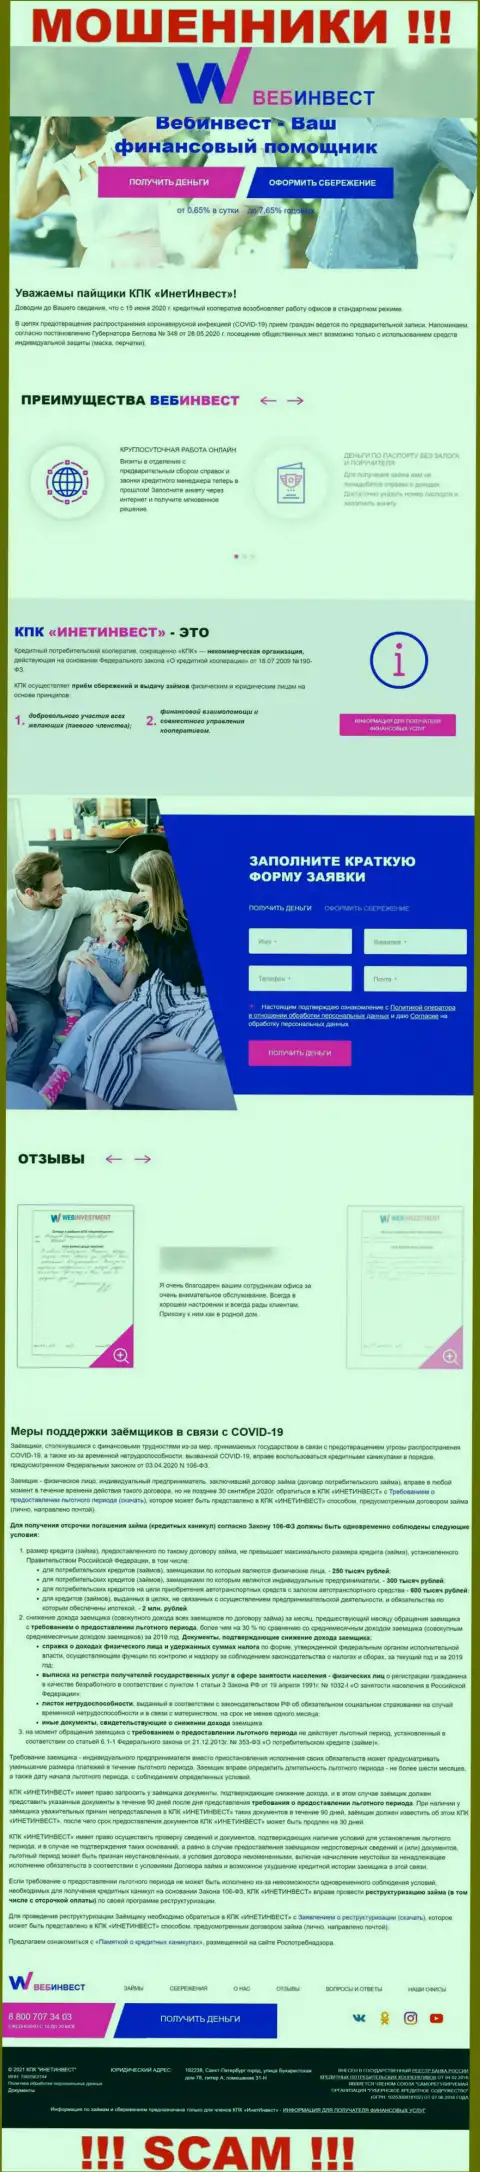 ВебИнвестмент Ру - это официальный web-сервис махинаторов Web Investment